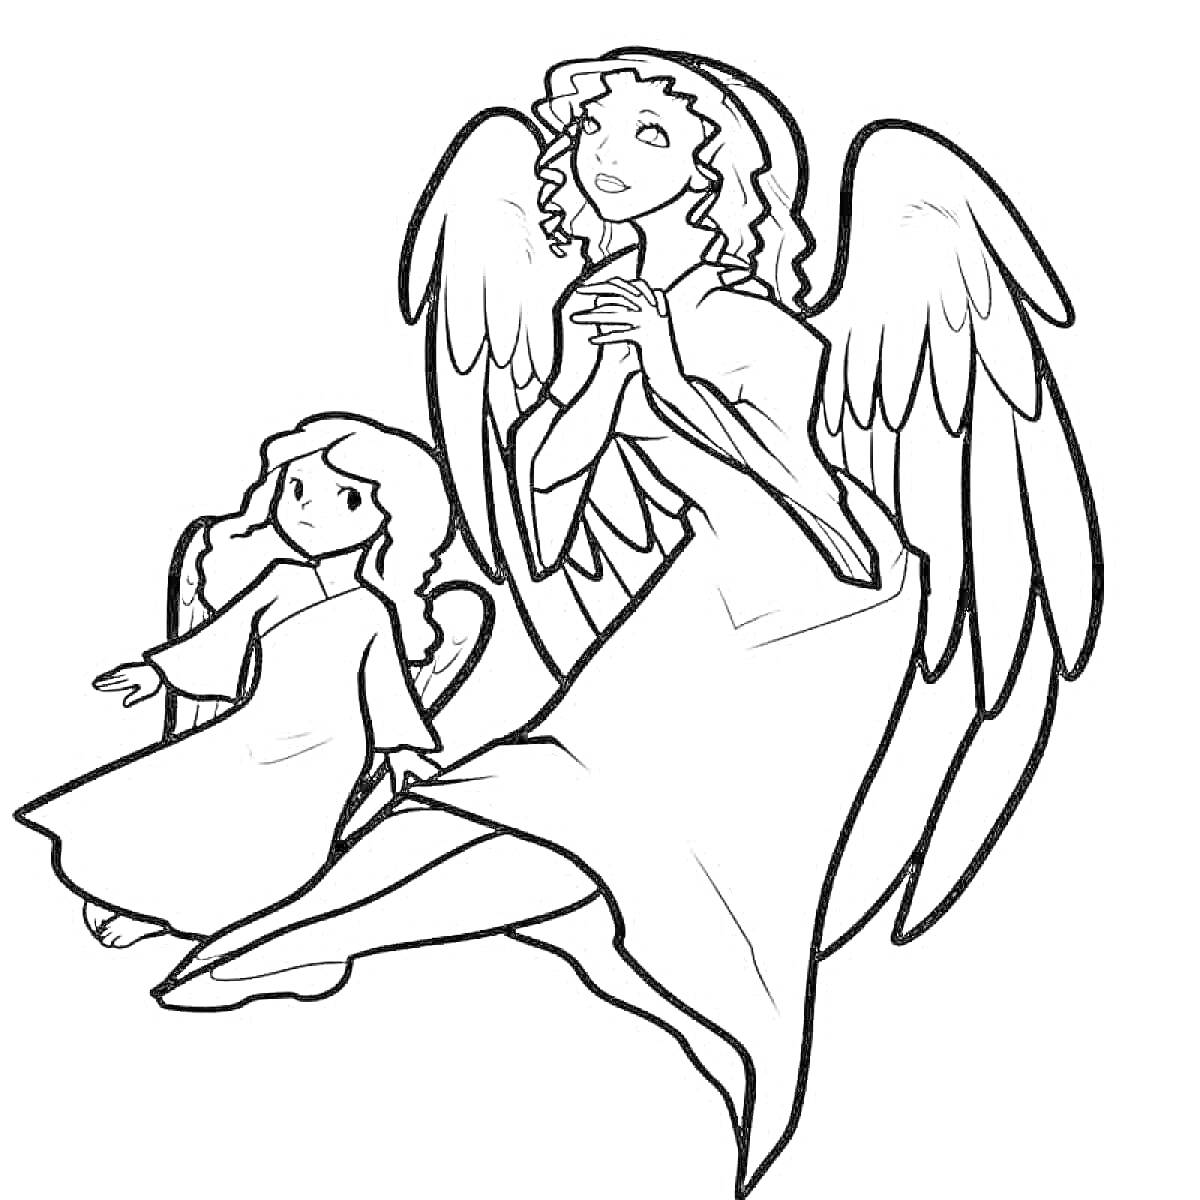 Раскраска Два ангела - взрослый ангел, сложивший руки в молитве, и маленький ангел, стоящий рядом с протянутой рукой